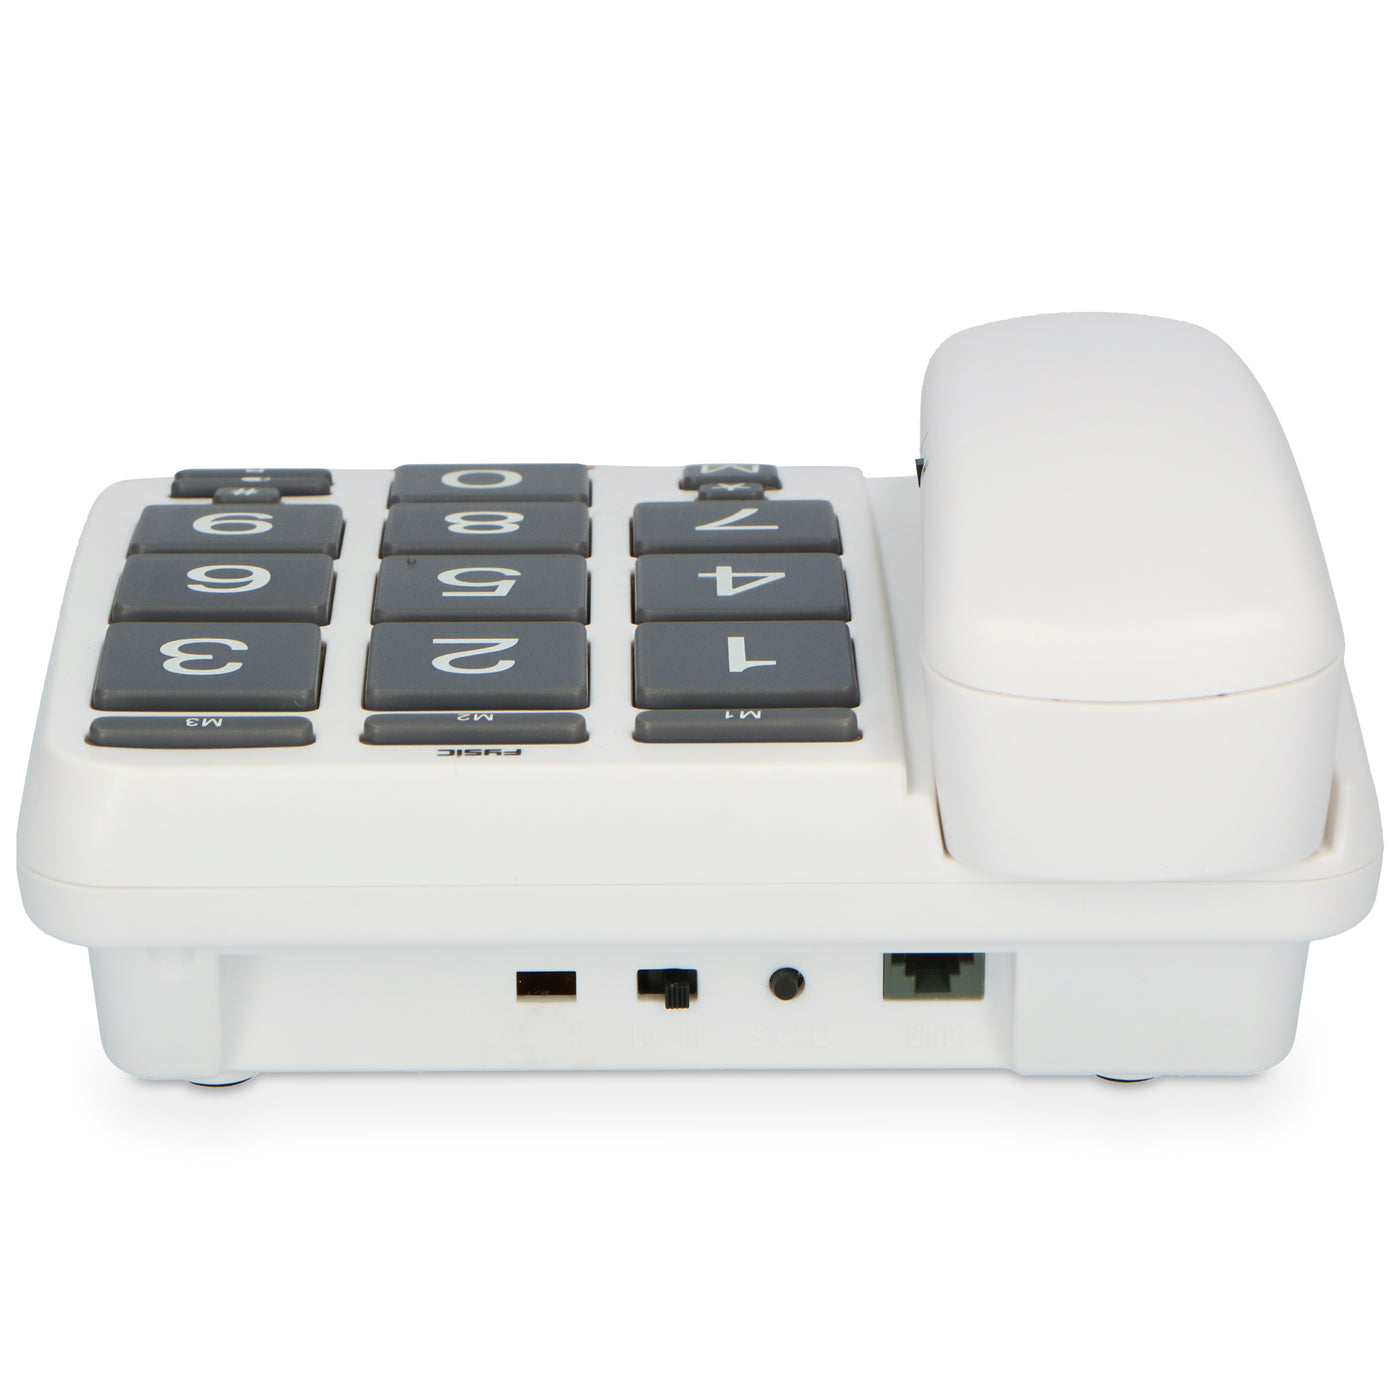 Fysic FX575 - Vaste telefoon met grote toetsen, wit/grijs